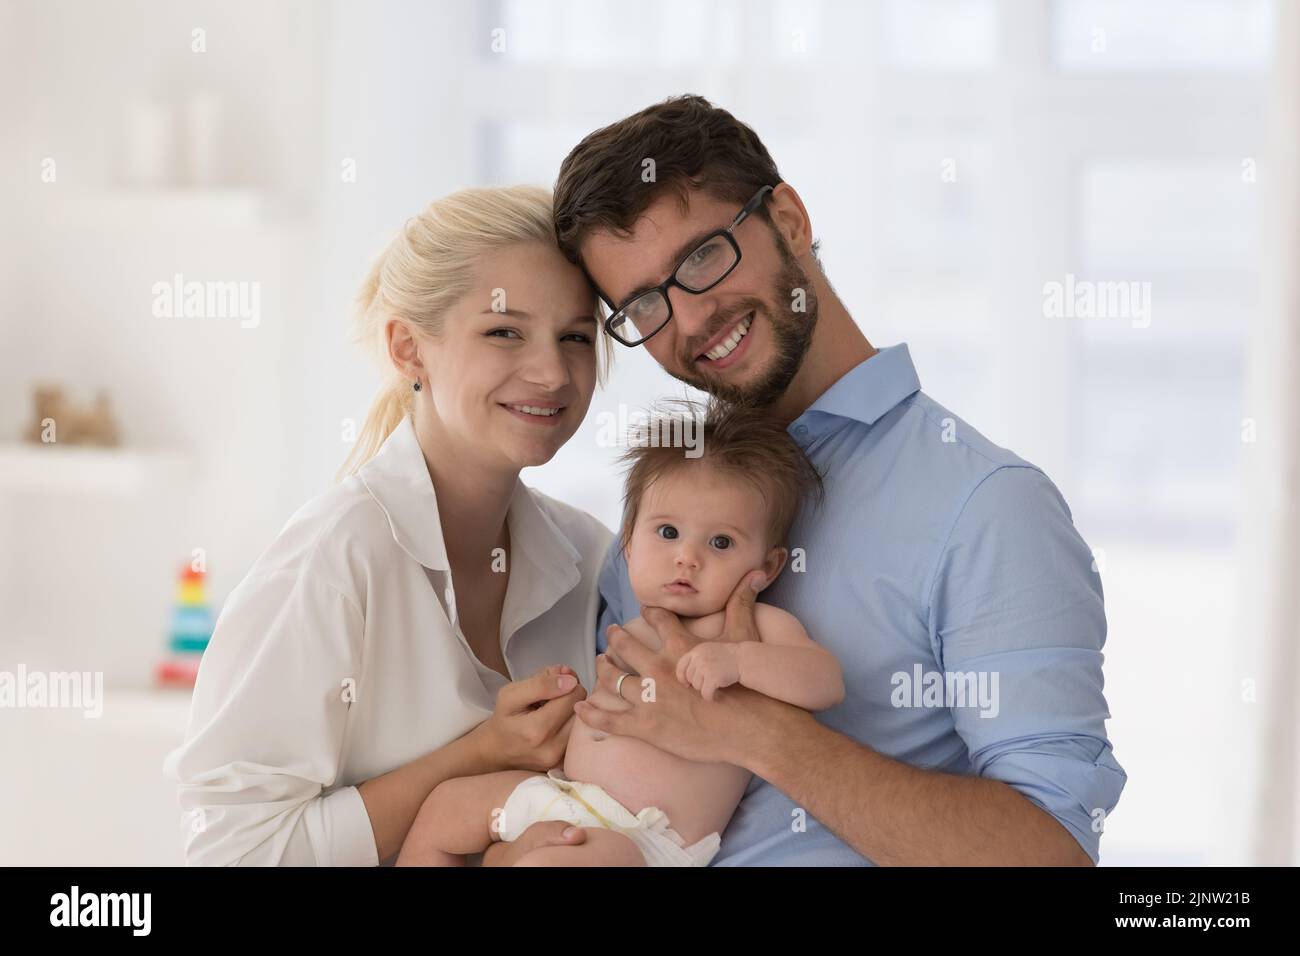 Porträt von liebevollen Eltern und Neugeborenen, die die Kamera anstarren Stockfoto